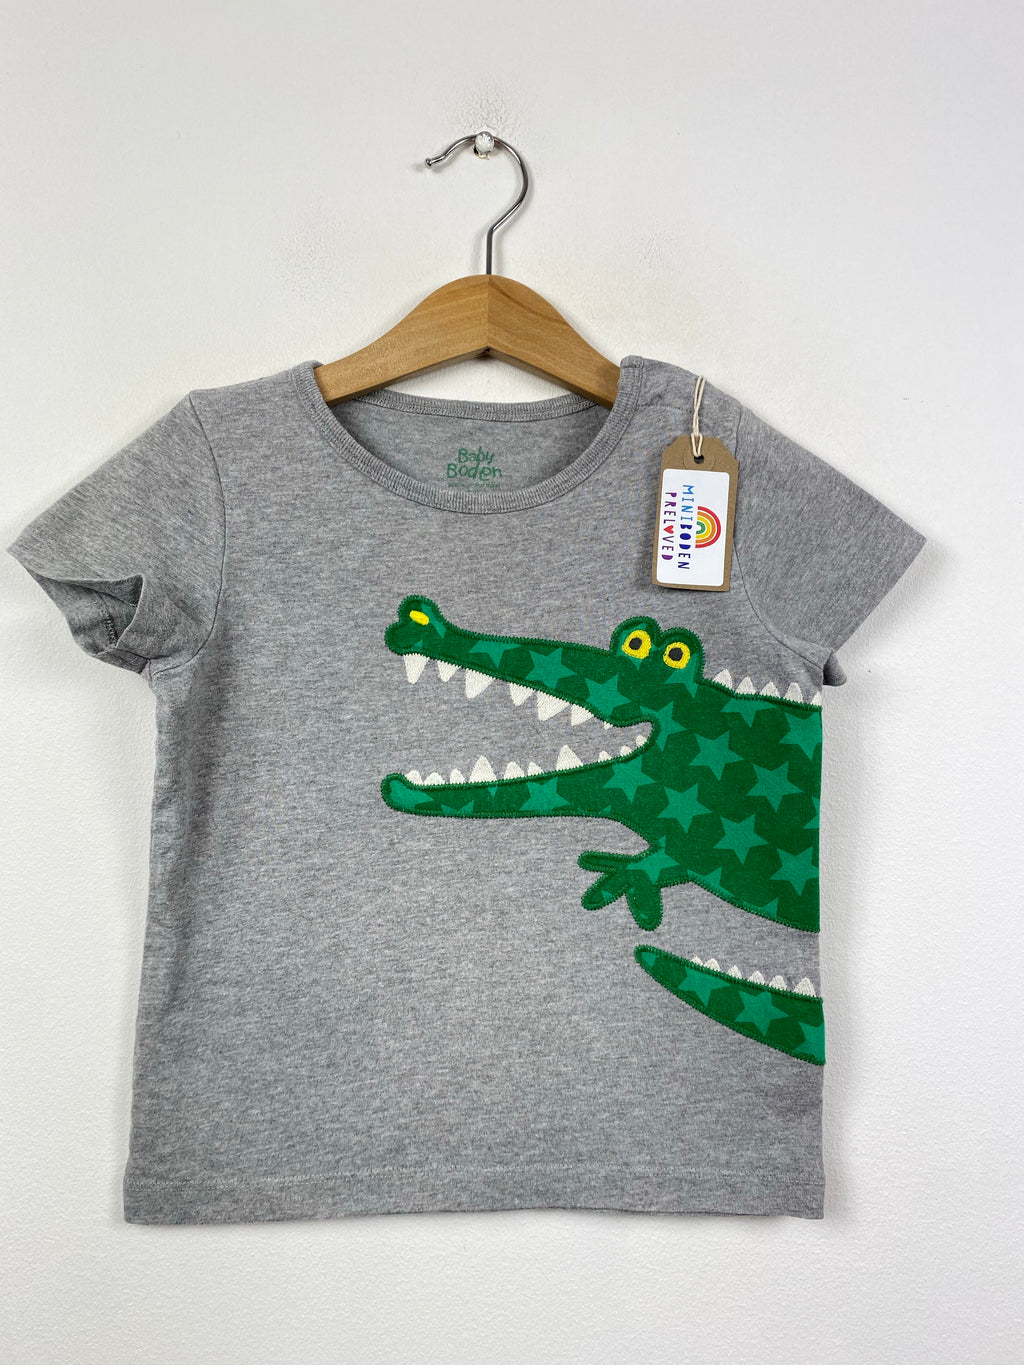 Grey Applique Alligator Design T-Shirt (2-3 Years)